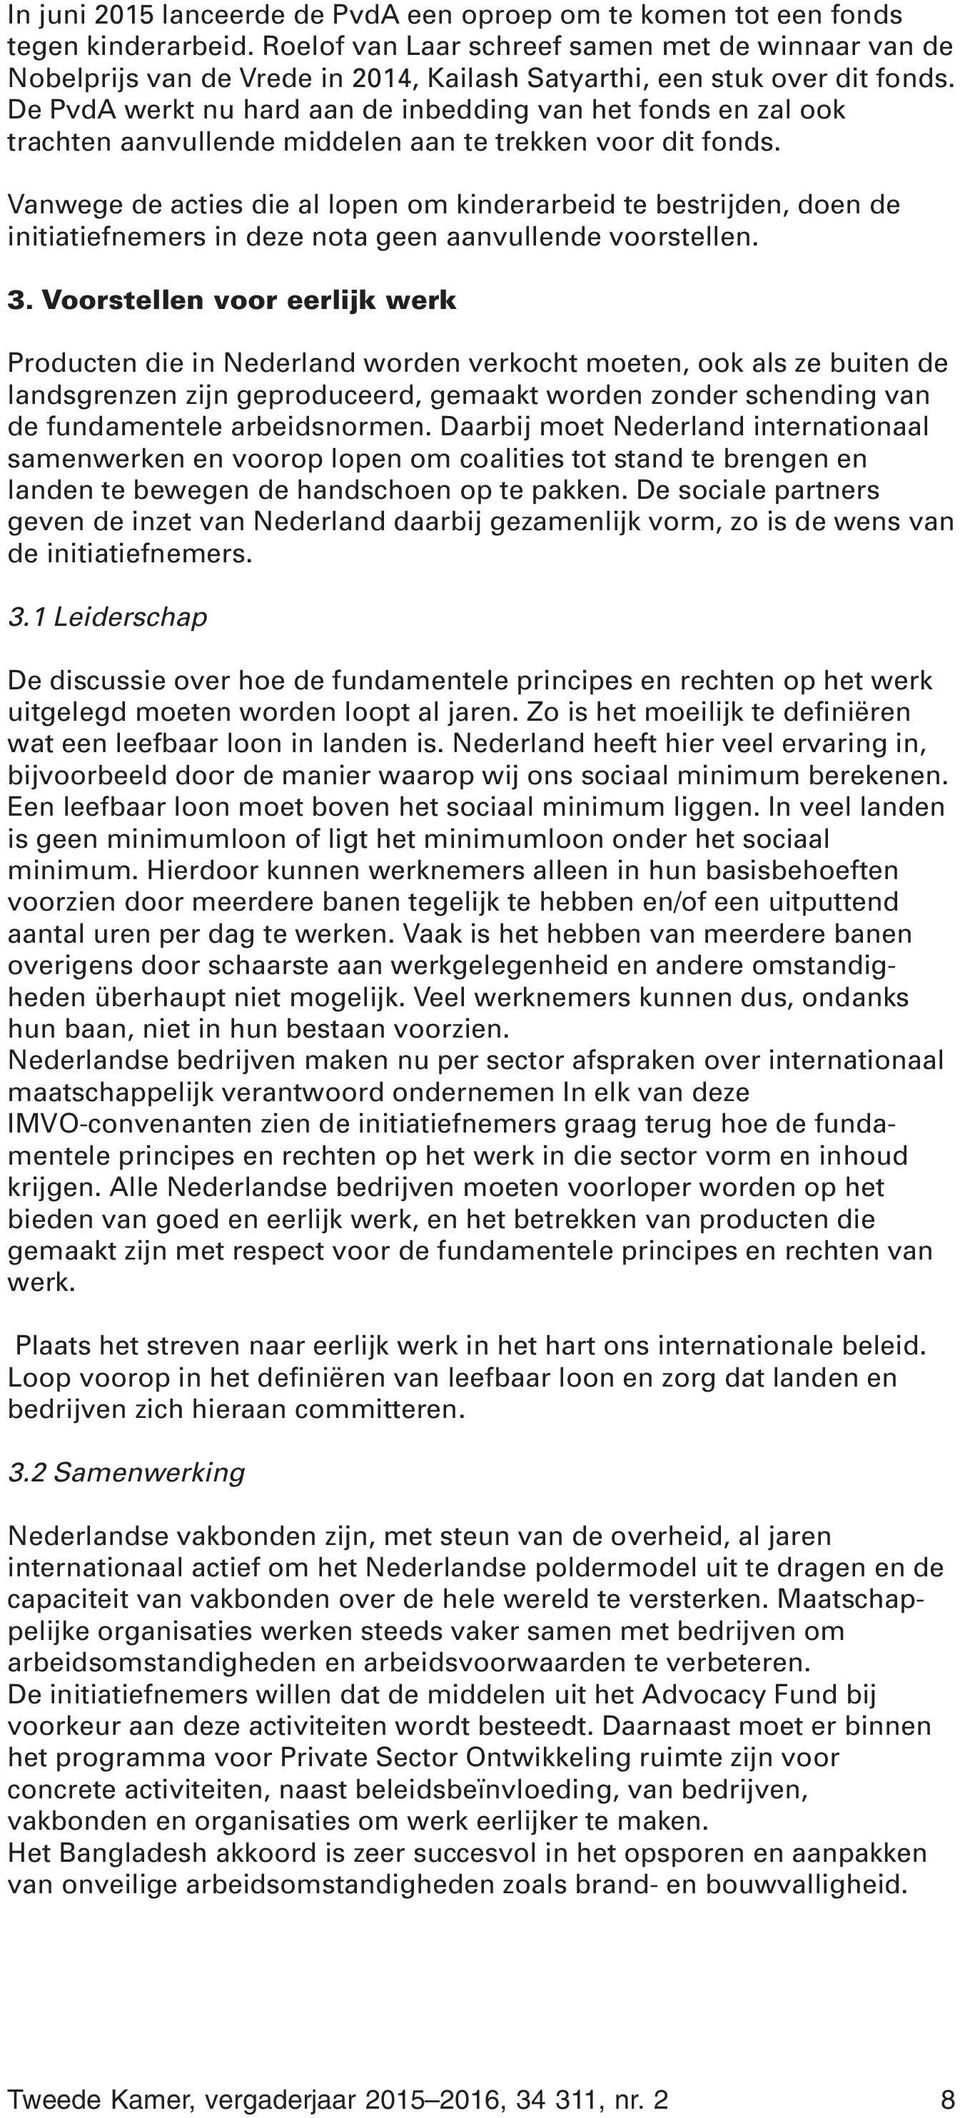 De PvdA werkt nu hard aan de inbedding van het fonds en zal ook trachten aanvullende middelen aan te trekken voor dit fonds.